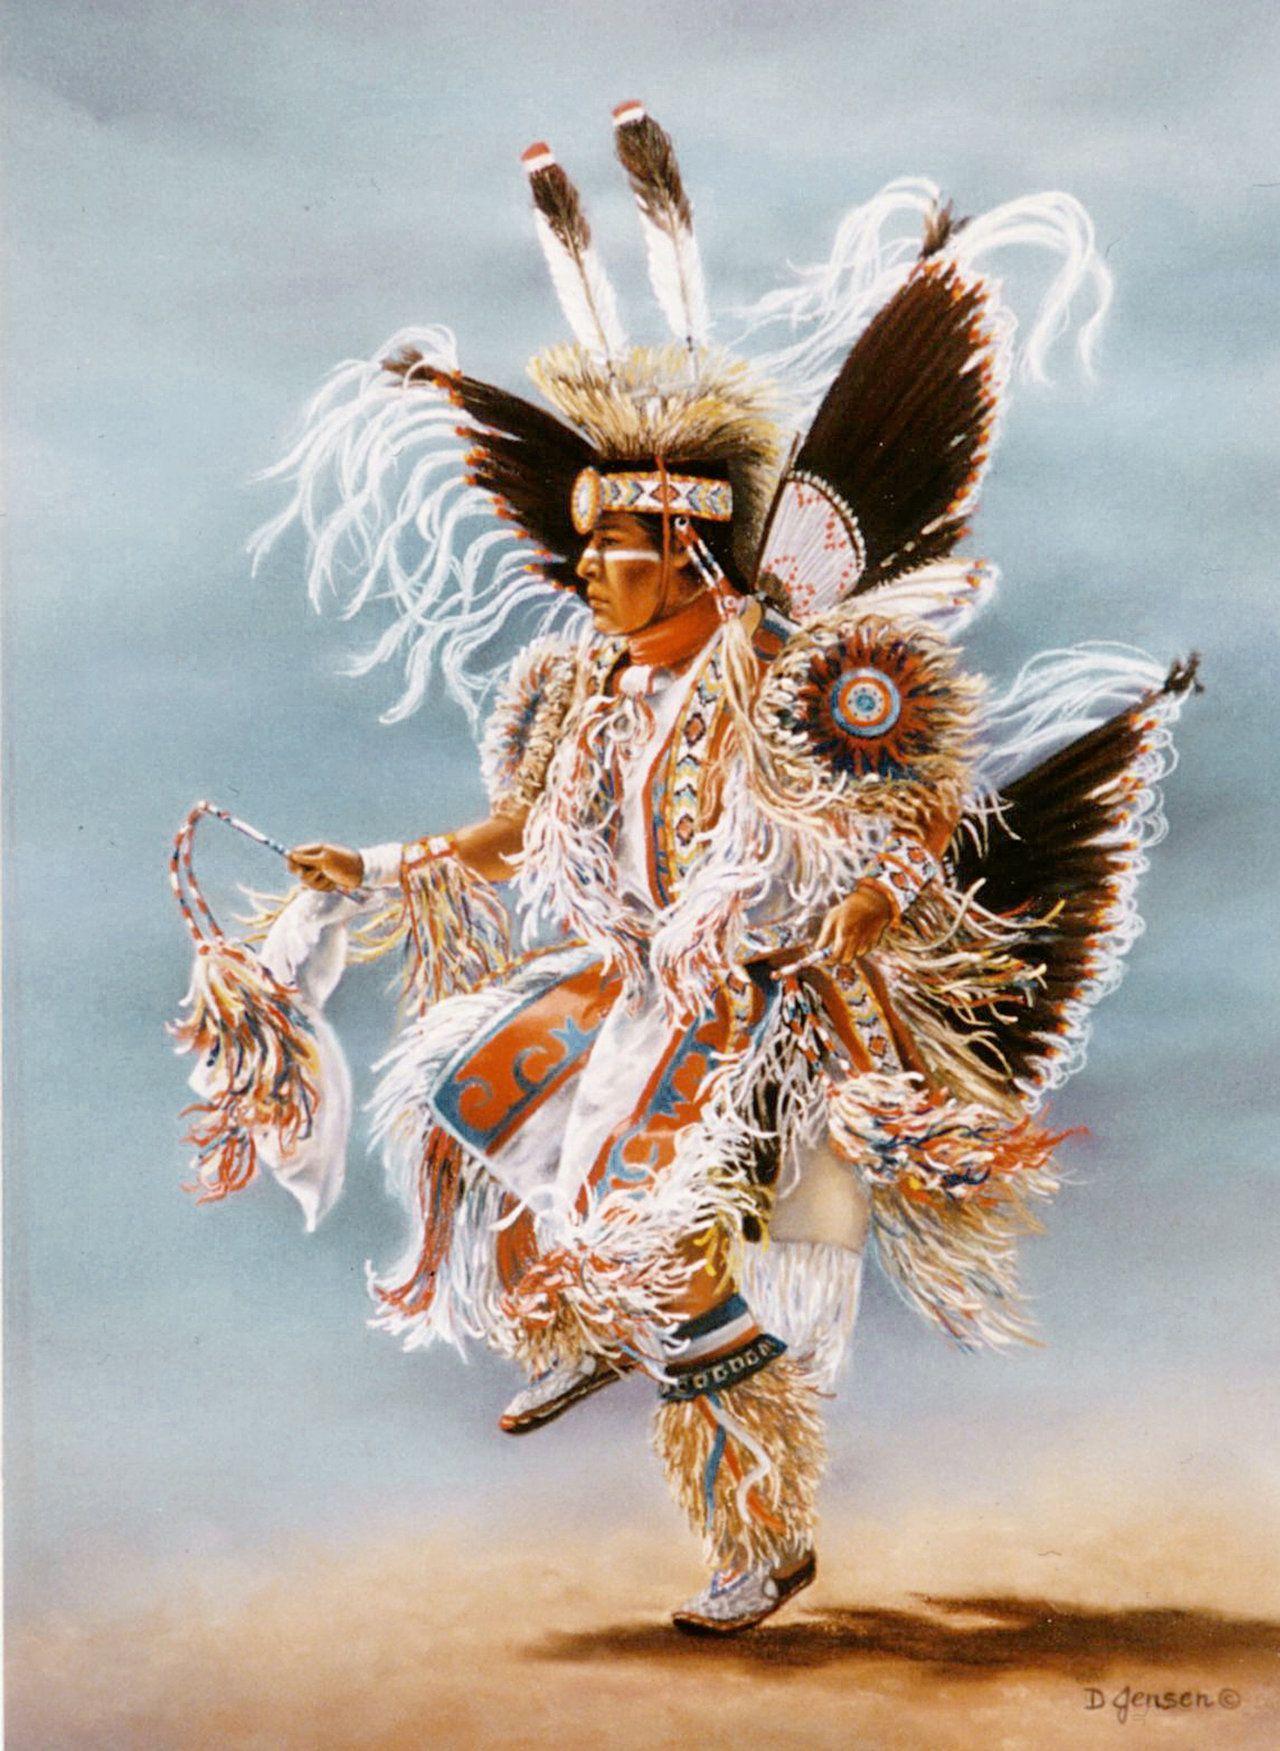 Native American Dancing Wallpapers Top Free Native American Dancing